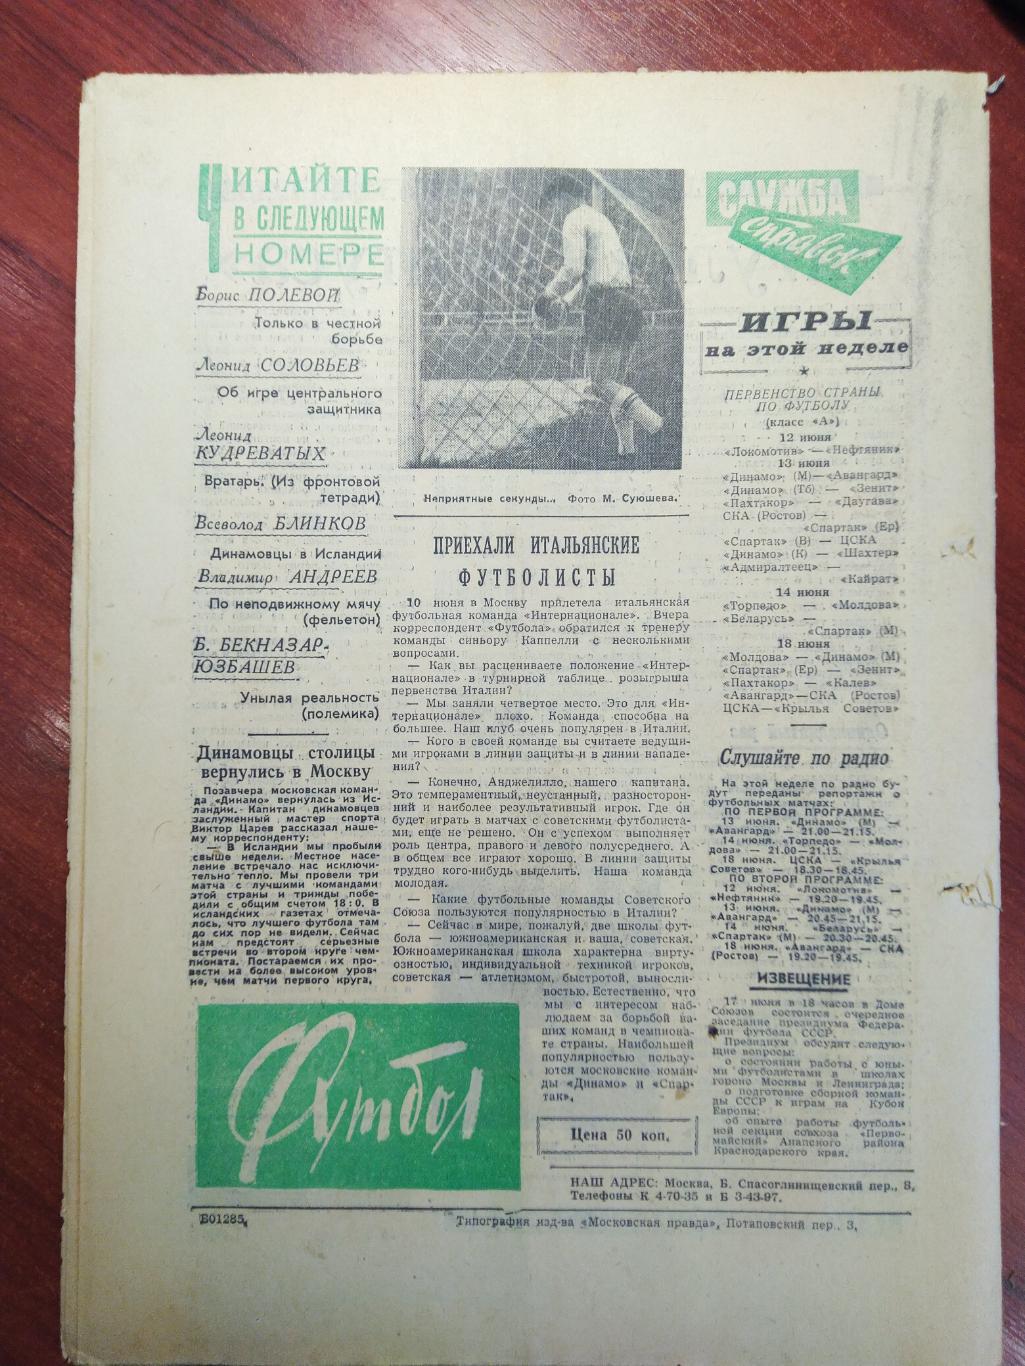 Еженедельник Футбол №3 от 12 июня 1960.Первый год выпуска! Московский выпуск 1